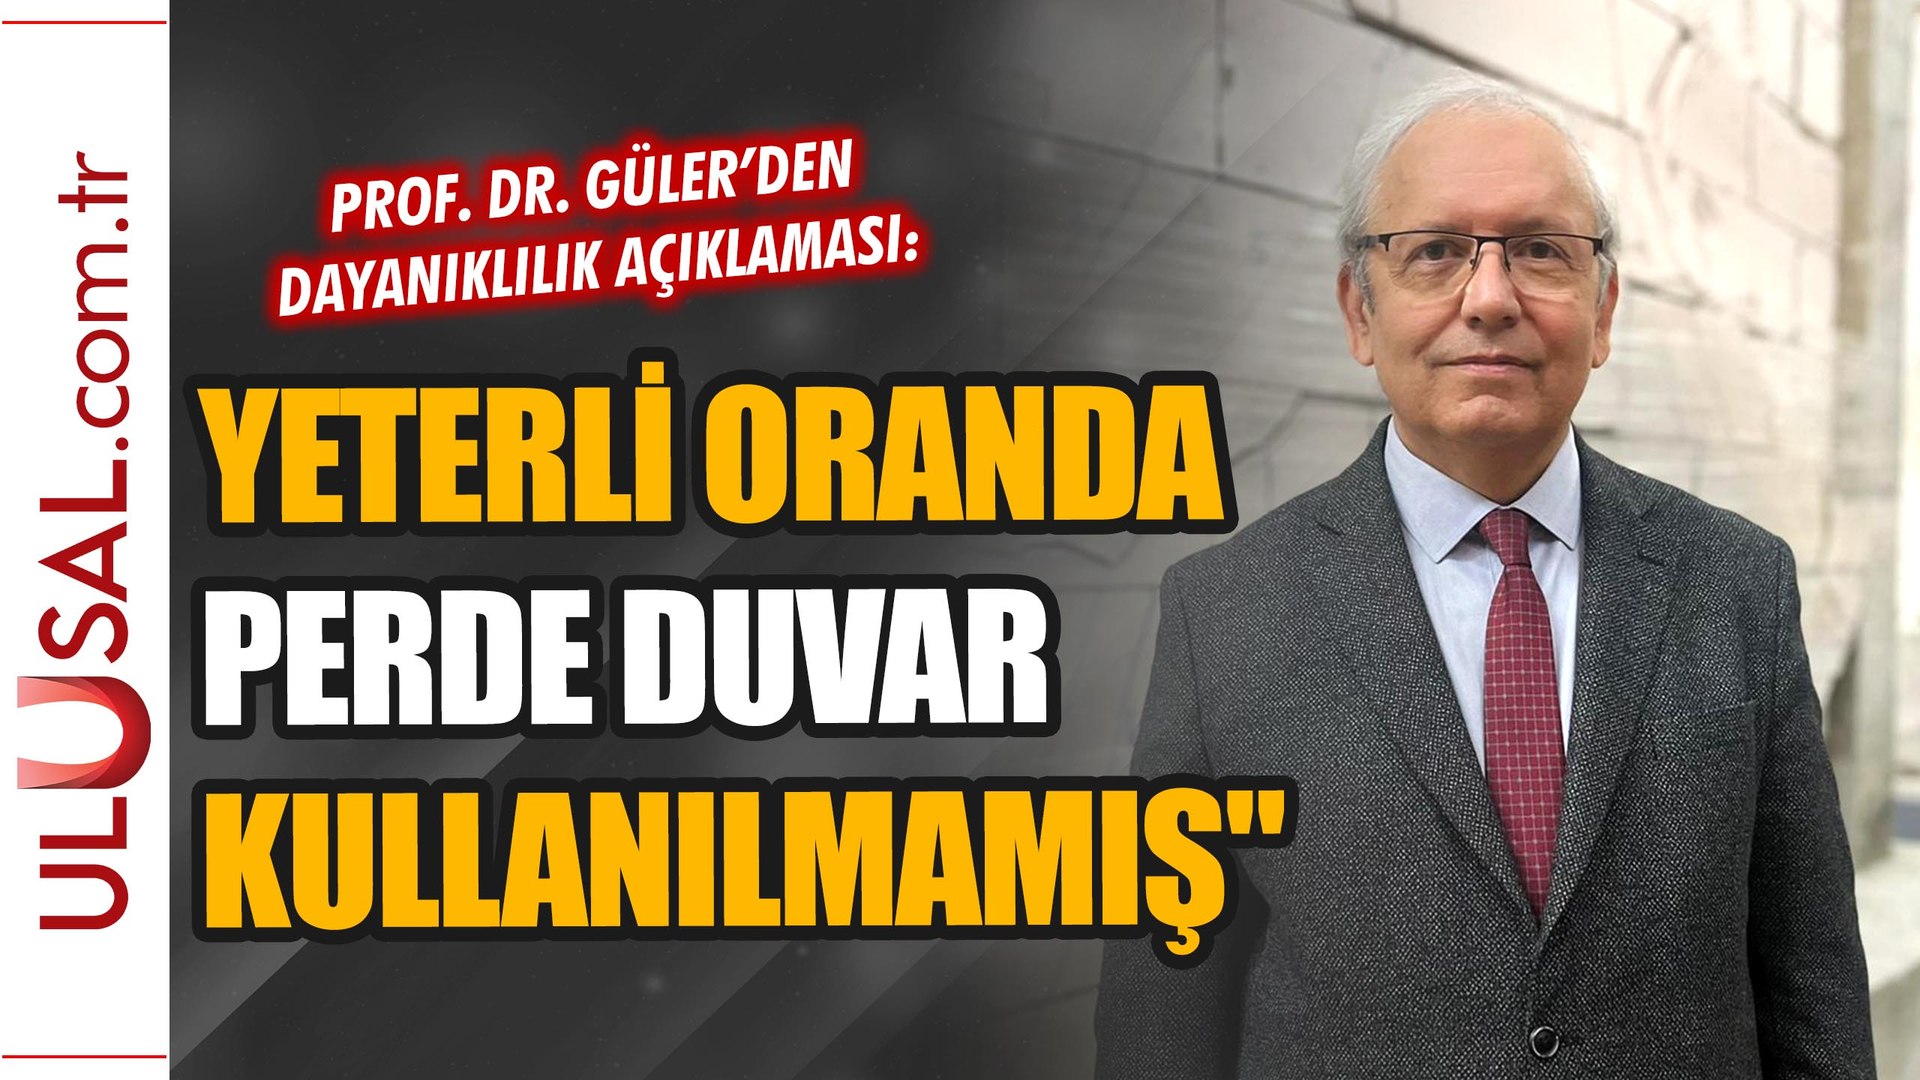 Prof. Dr. Kadir Güler: "Perde duvar sistemi yeterli kullanılmamış" -  Dailymotion Video